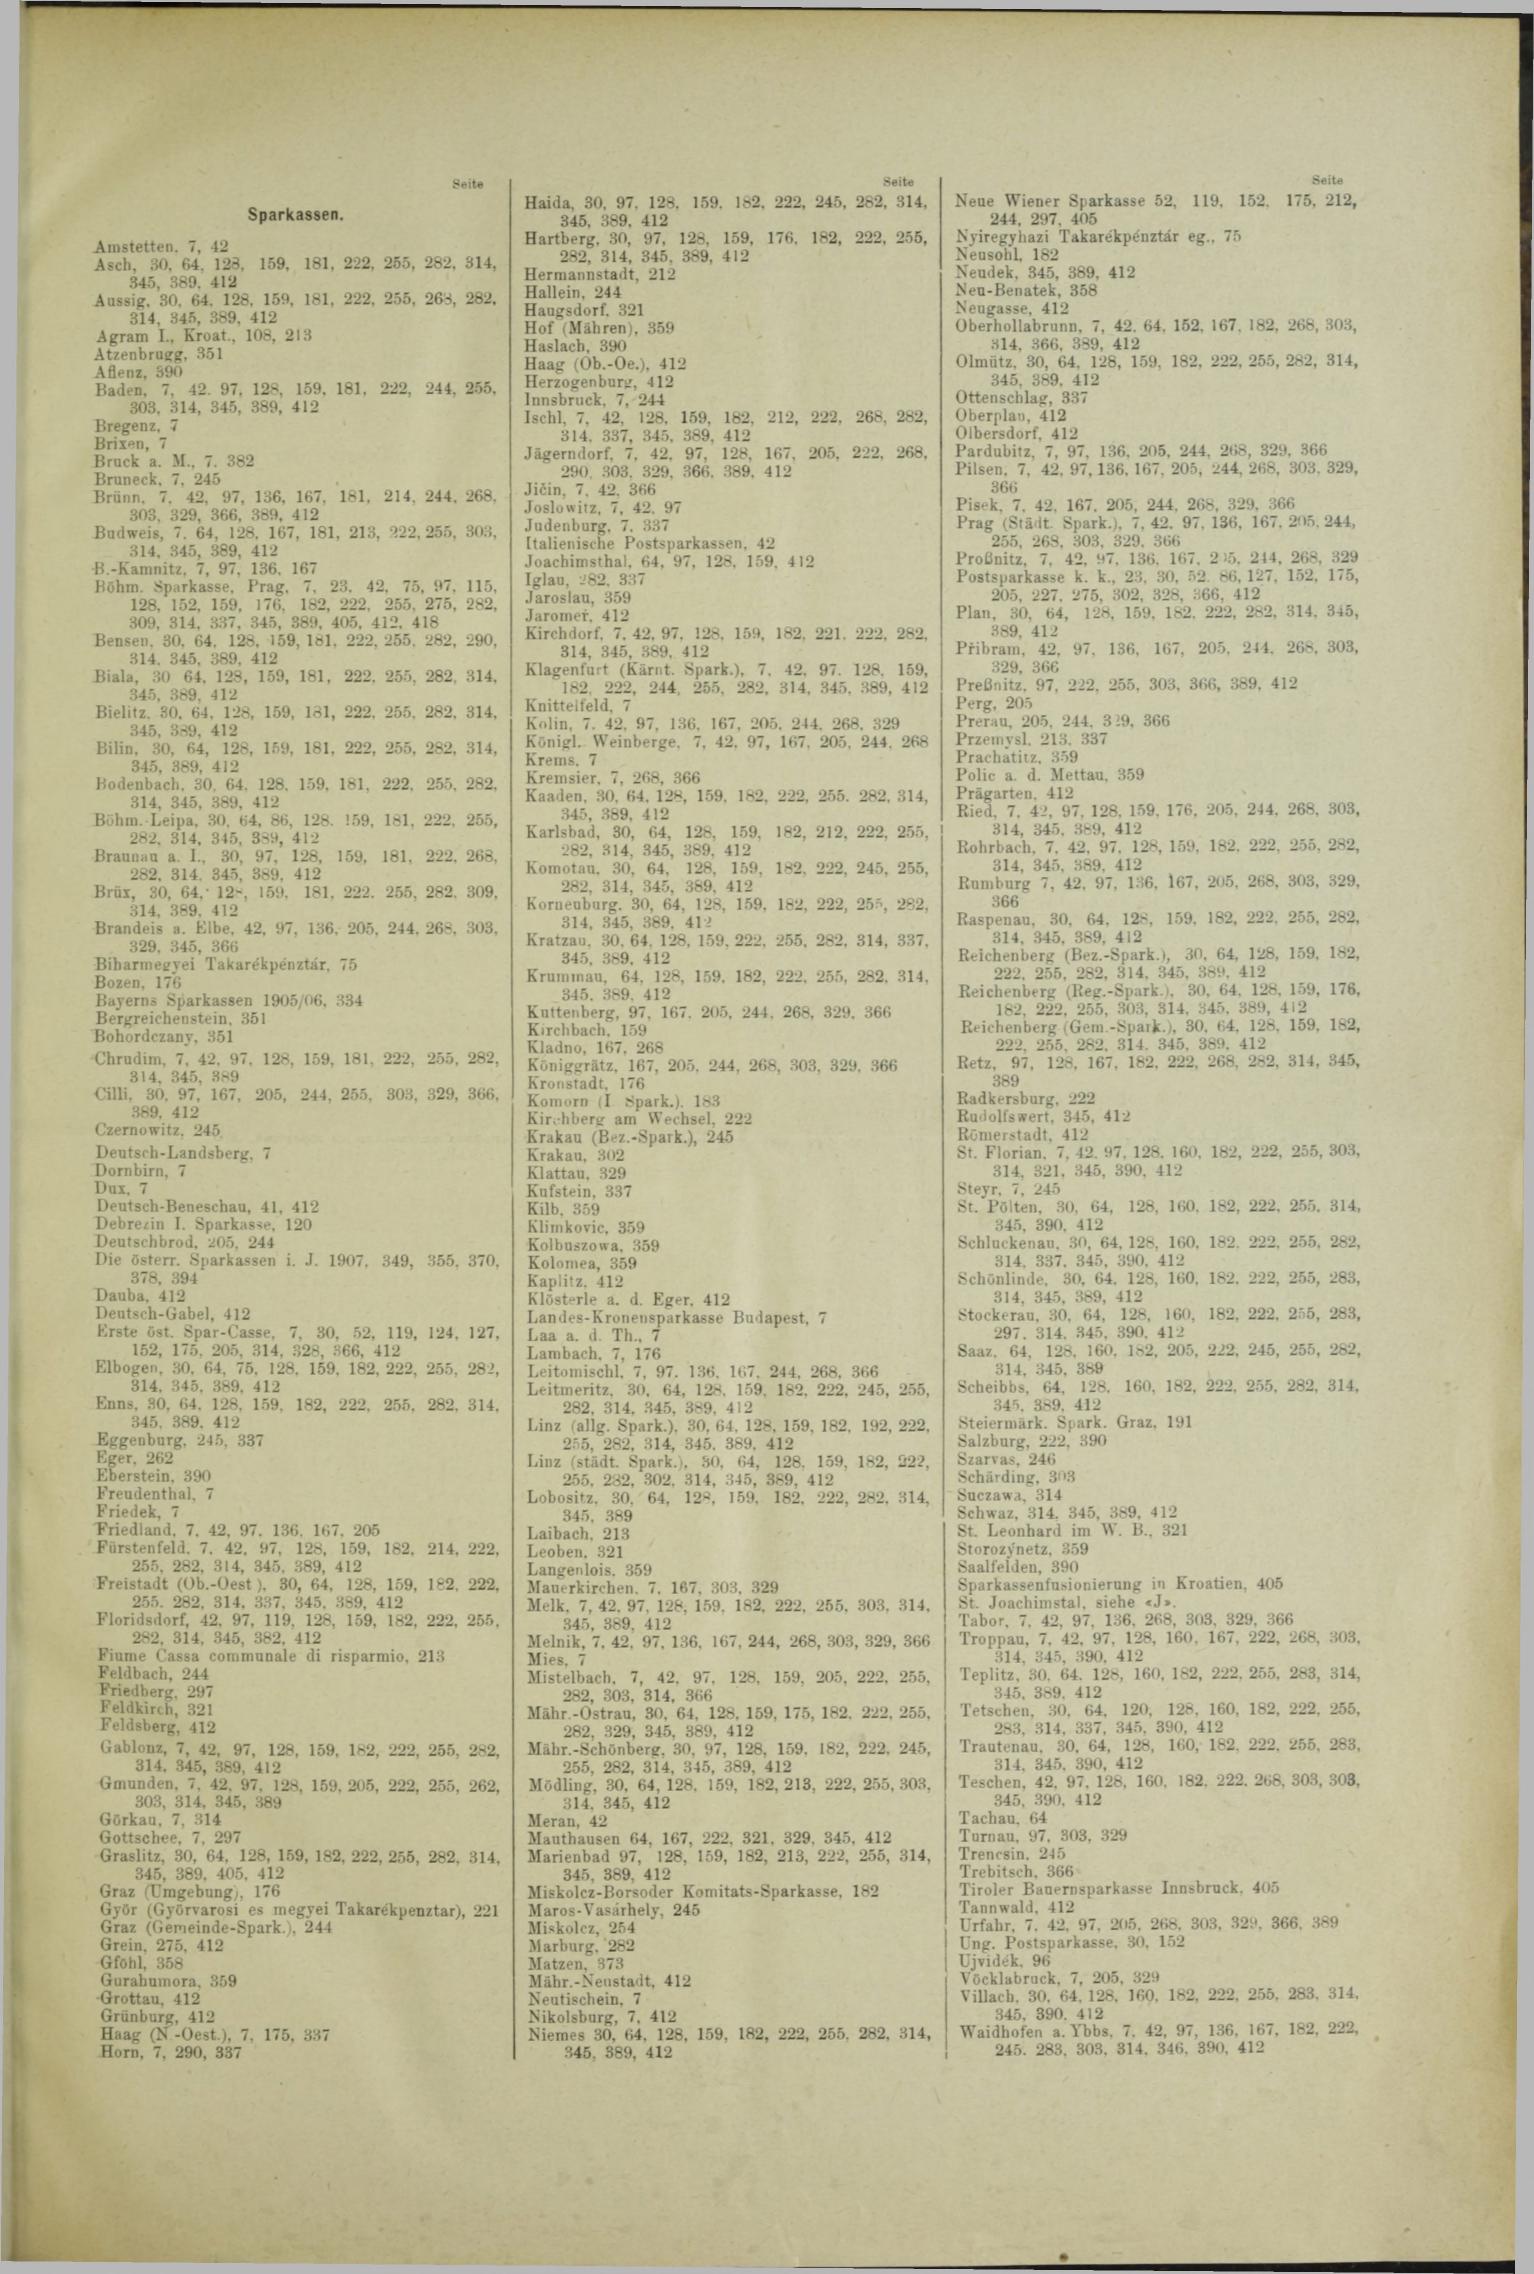 Der Tresor 12.09.1908 - Seite 9